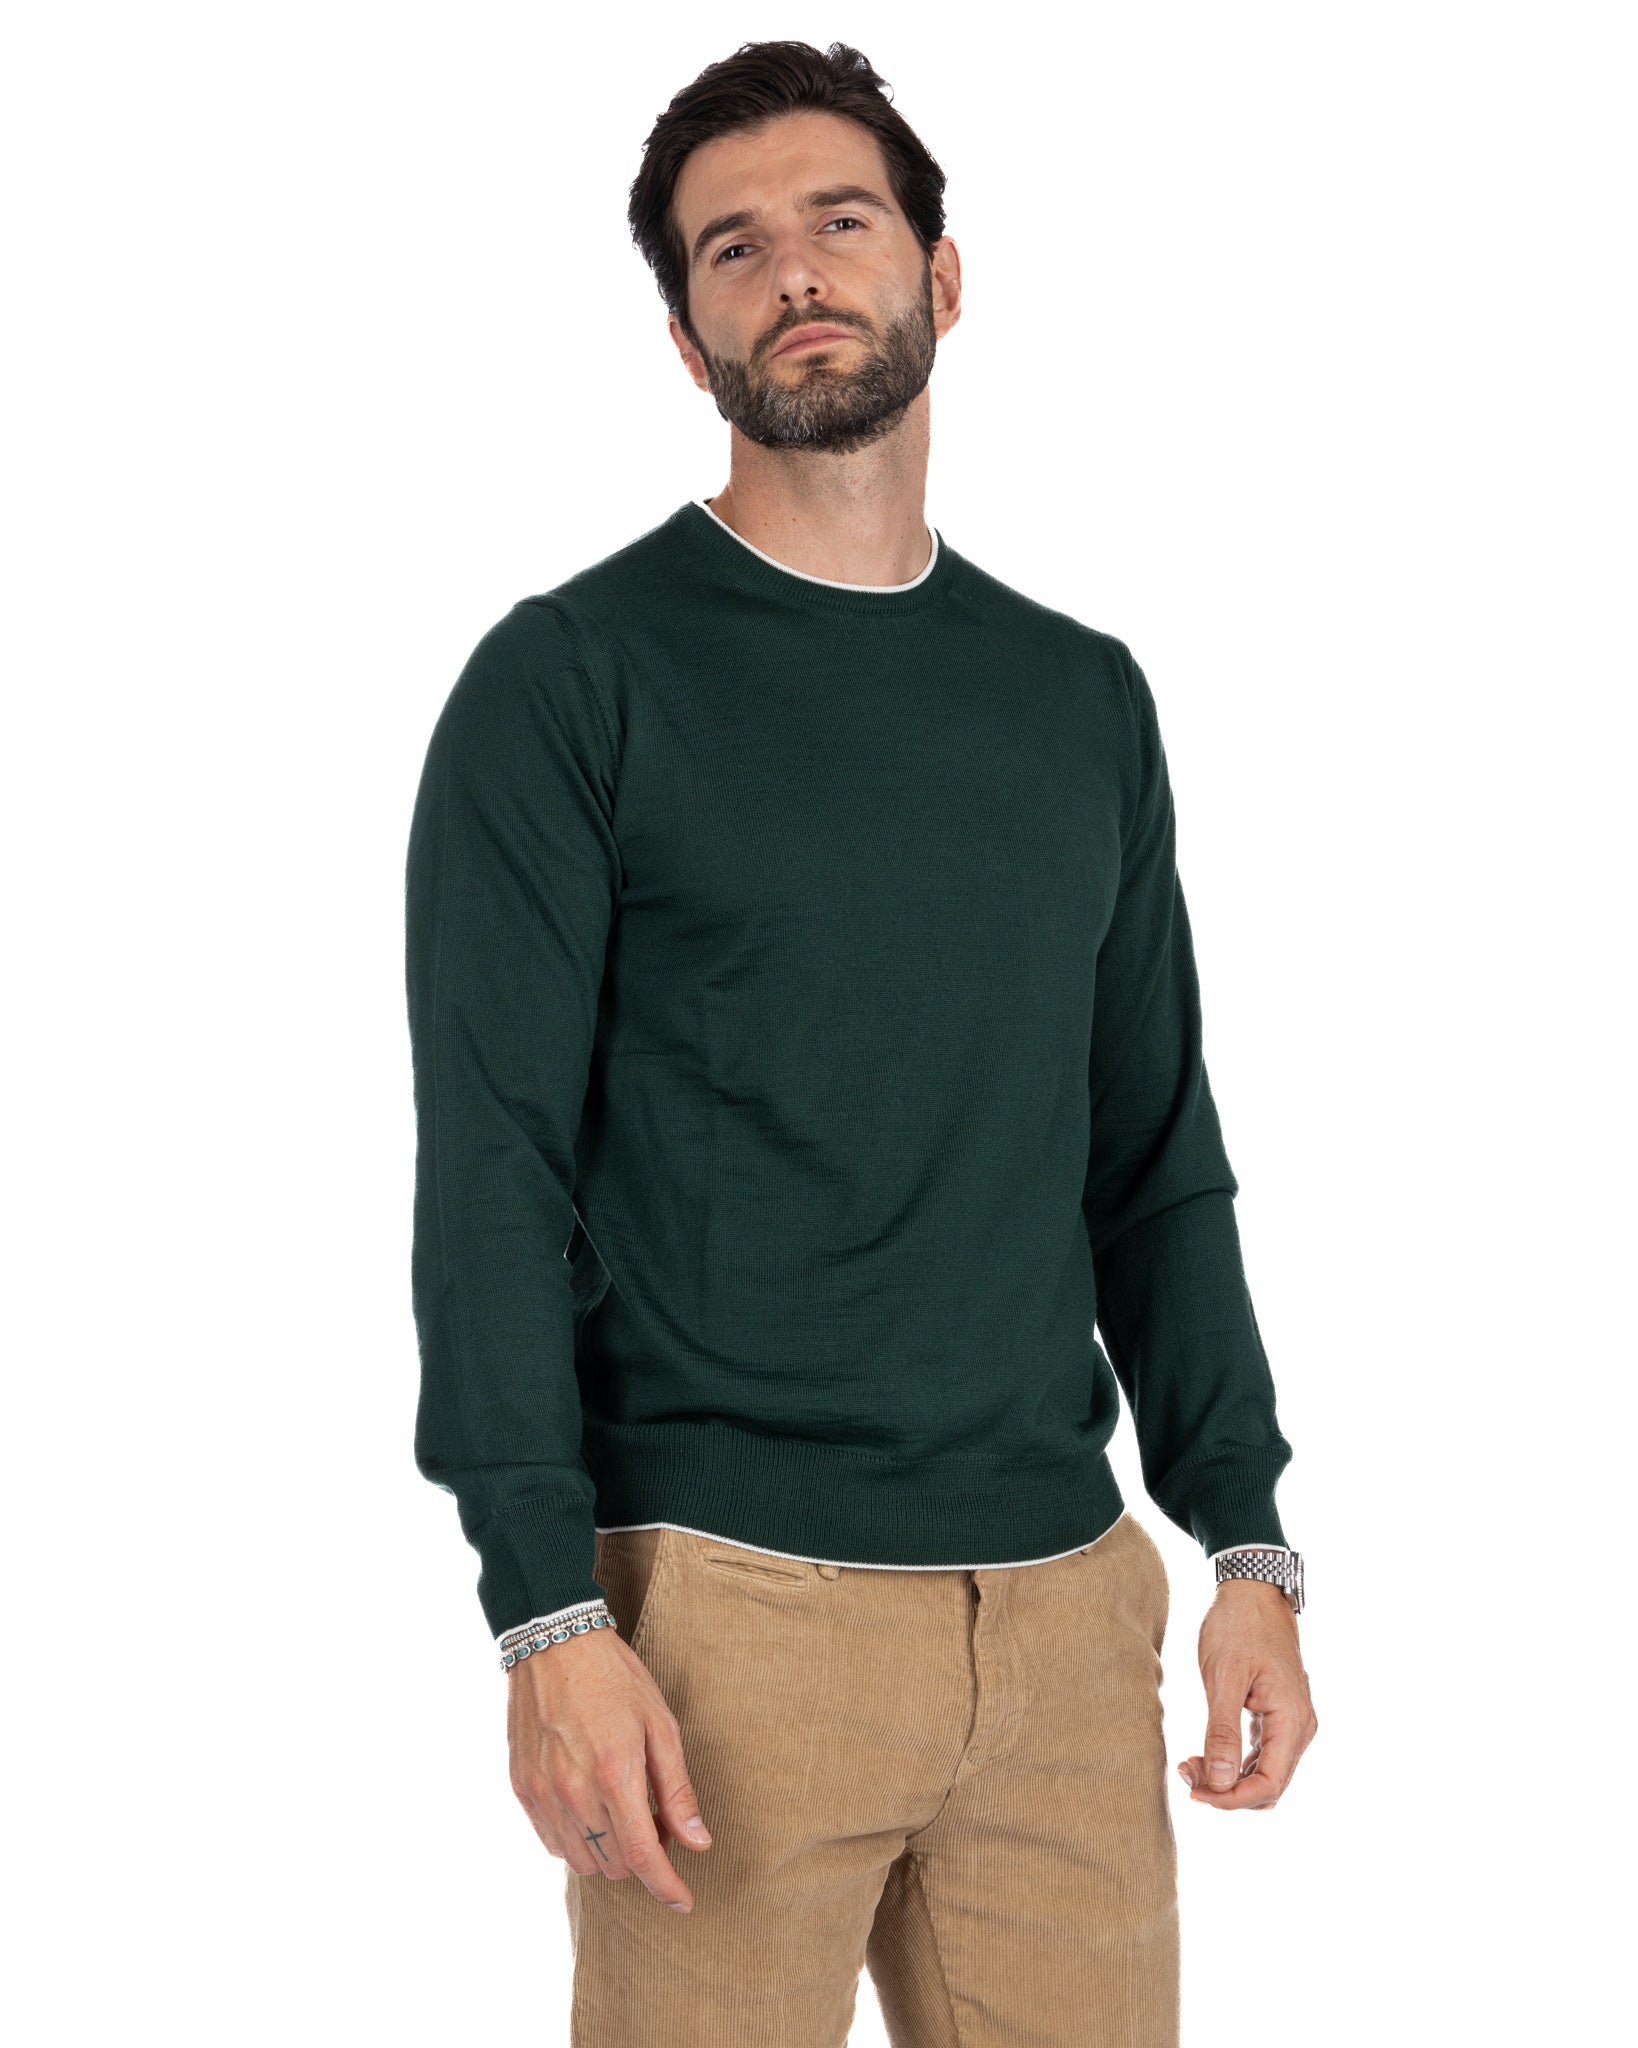 Seve - maglione verde con bordo panna